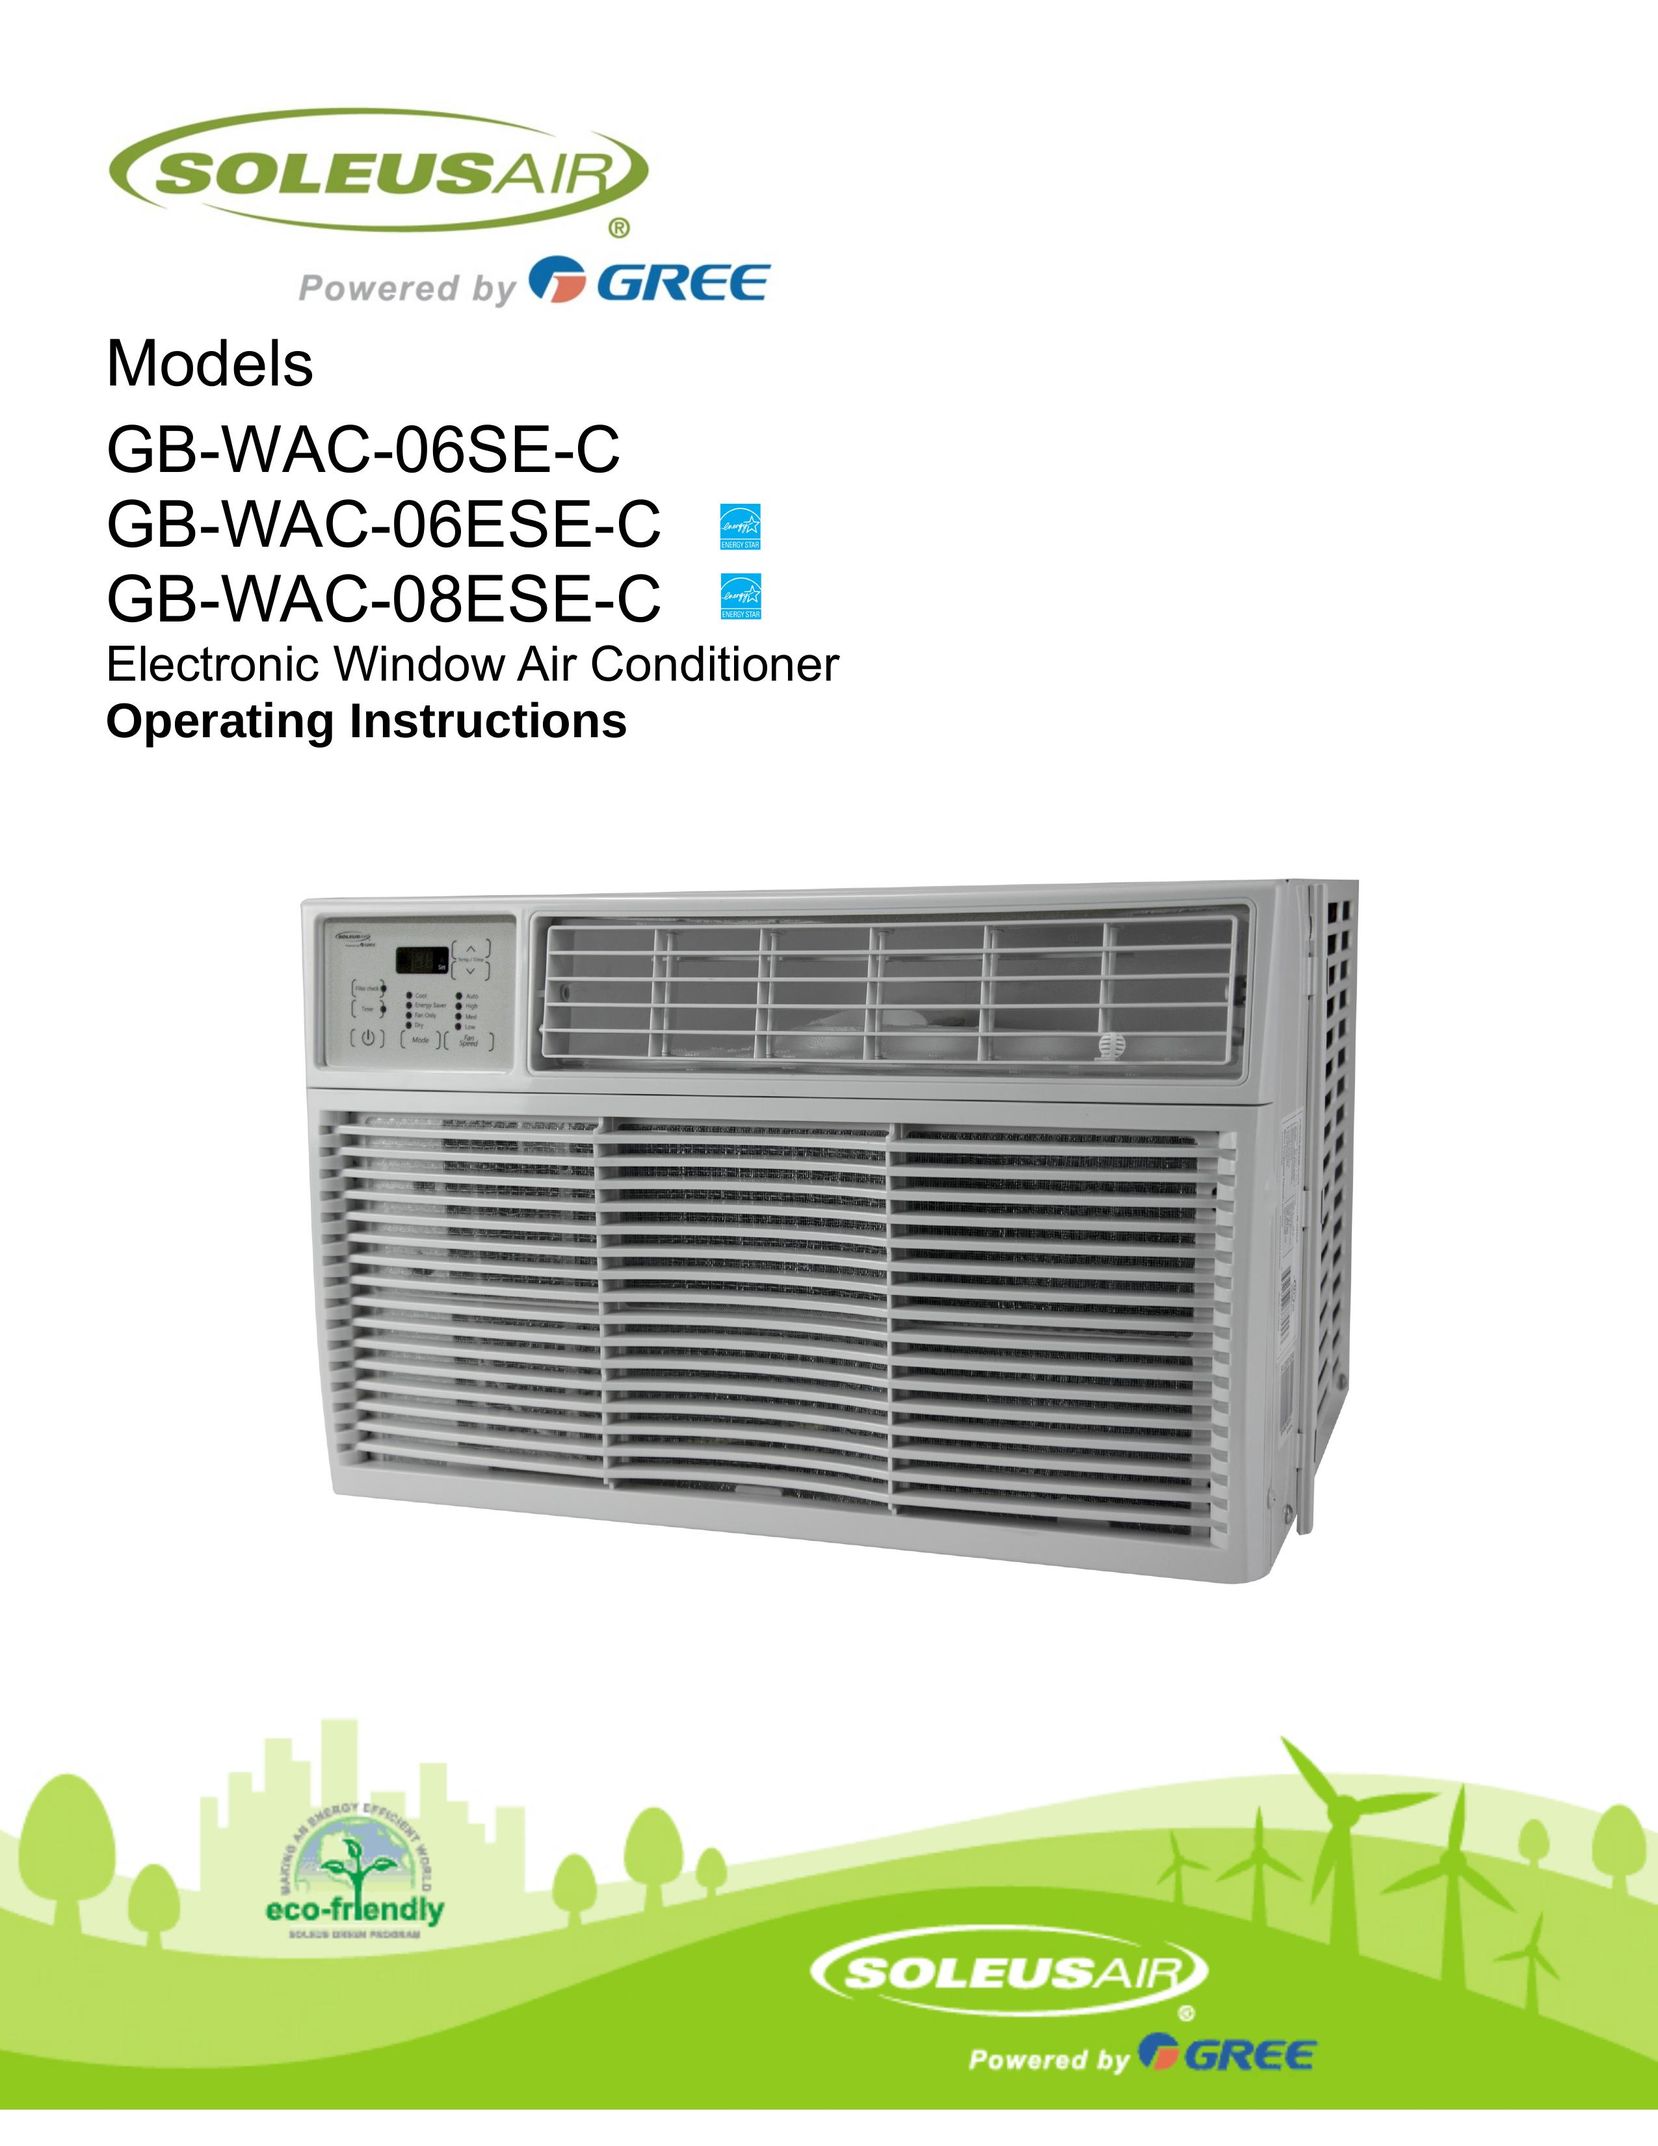 Soleus Air GB-WAC-06ESE-C Air Conditioner User Manual